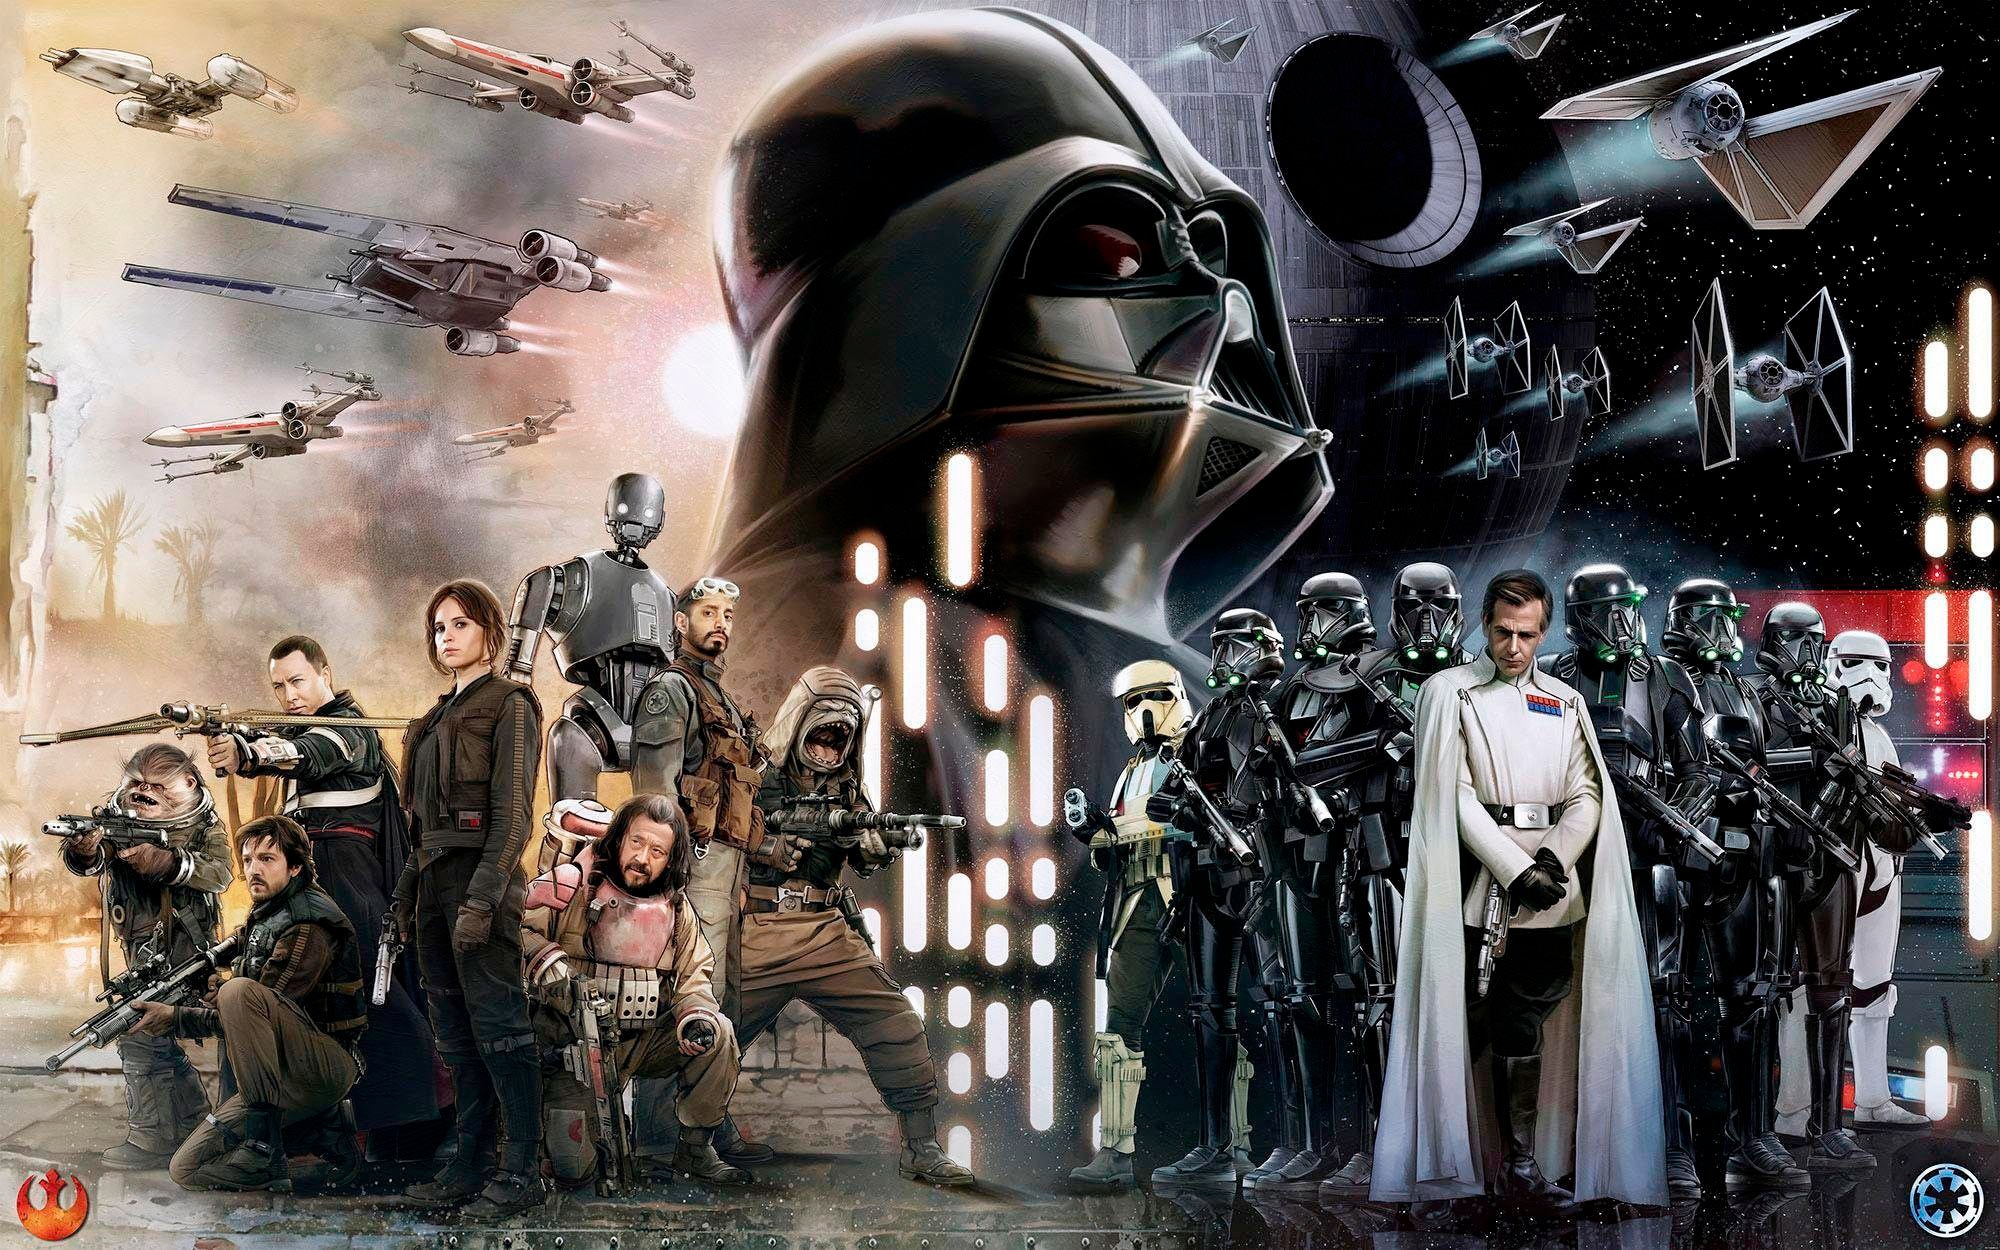 Komar Vliestapete "Star Wars Collage", 400x250 cm (Breite x Höhe), Vliestapete, 100 cm Bahnbreite